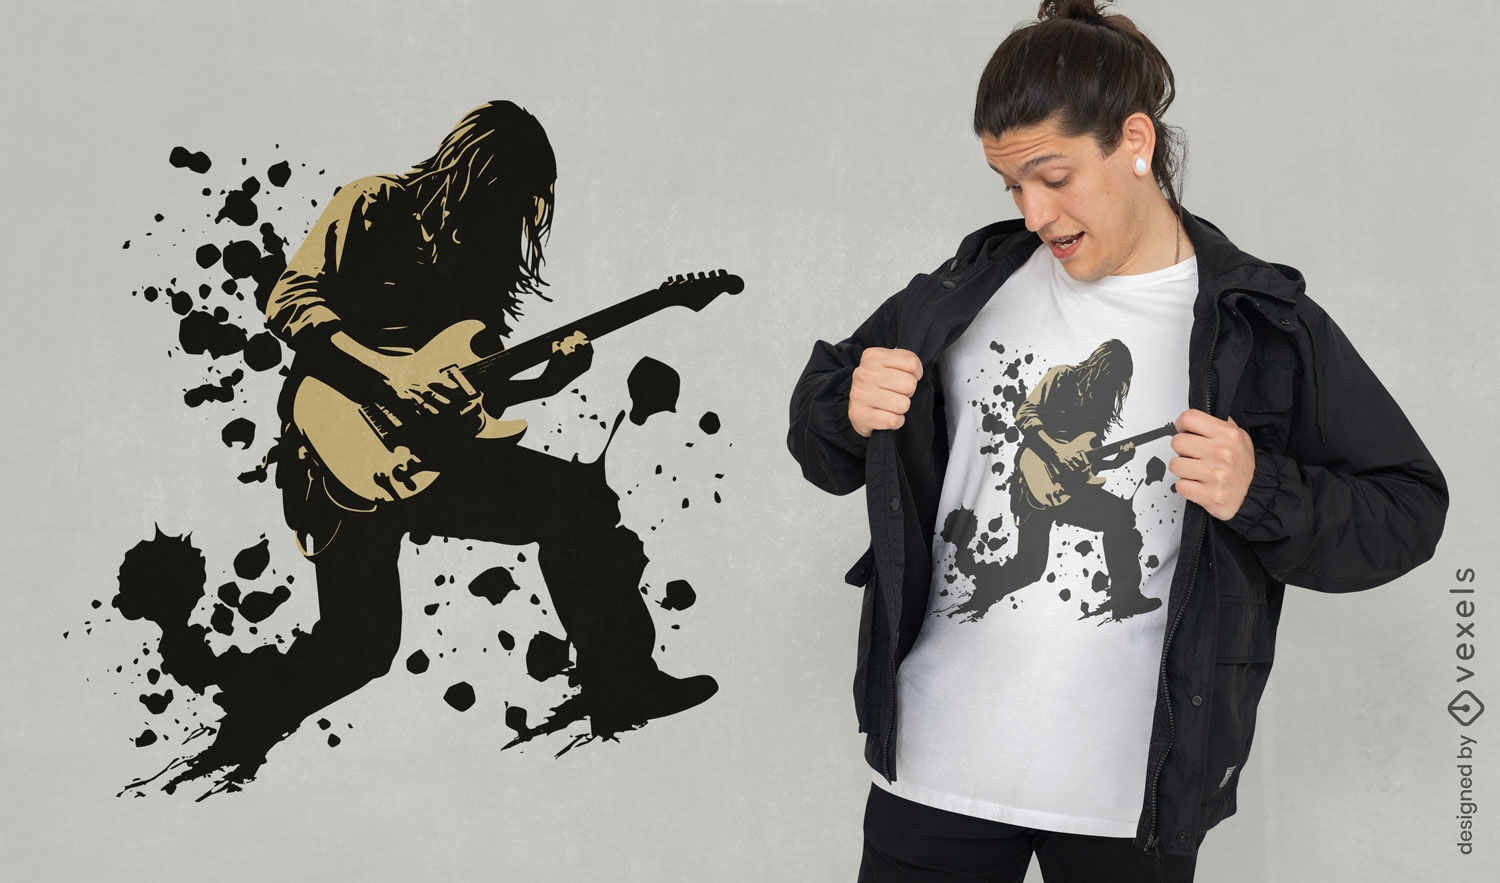 Diseño de camiseta de guitarrista rockstar.